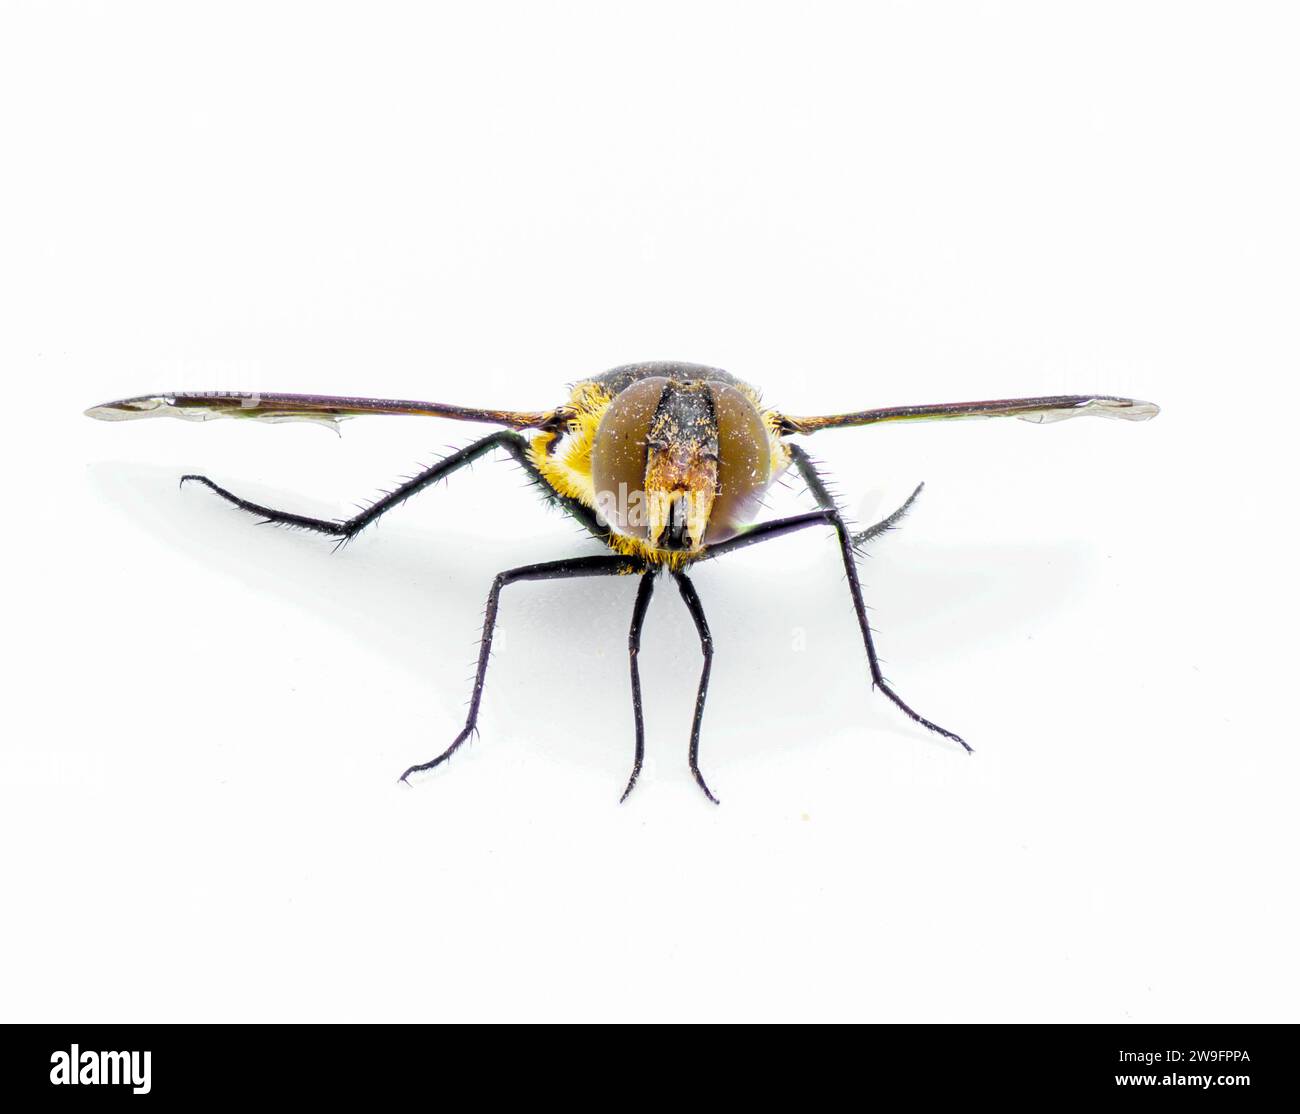 Lesser Bee Fly - Exoprosopa fascipennis - version de Floride des espèces communes de hoverfly ou de hover Fly. isolé sur fond blanc vue de face avant Banque D'Images